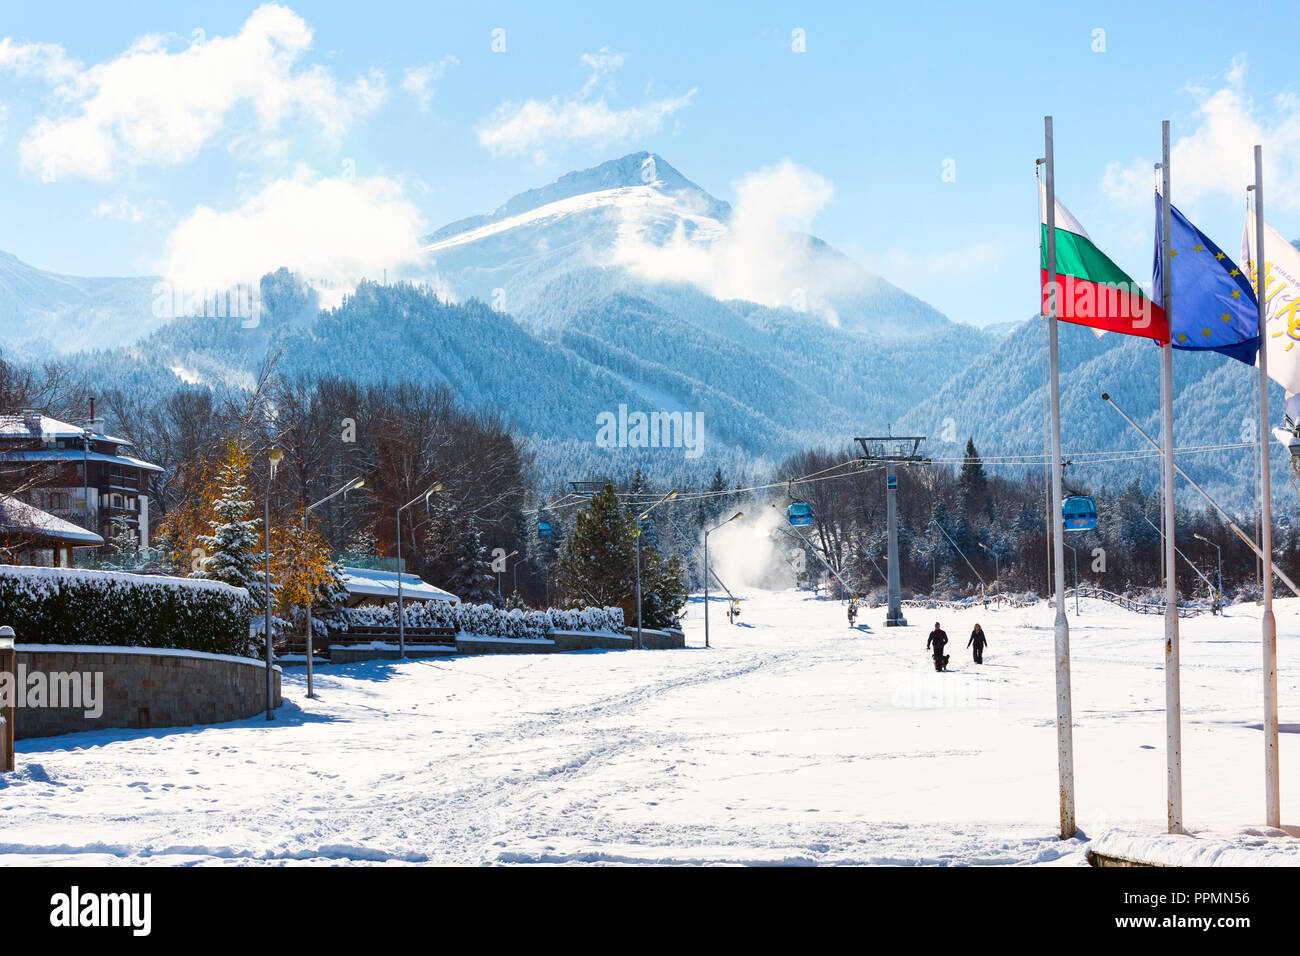 Bansko, Bulgarie - 30 novembre 2016 : l'hiver ski de fond avec white snow mountain peak, drapeau bulgare et canons à neige à Bansko, Bulgarie Banque D'Images